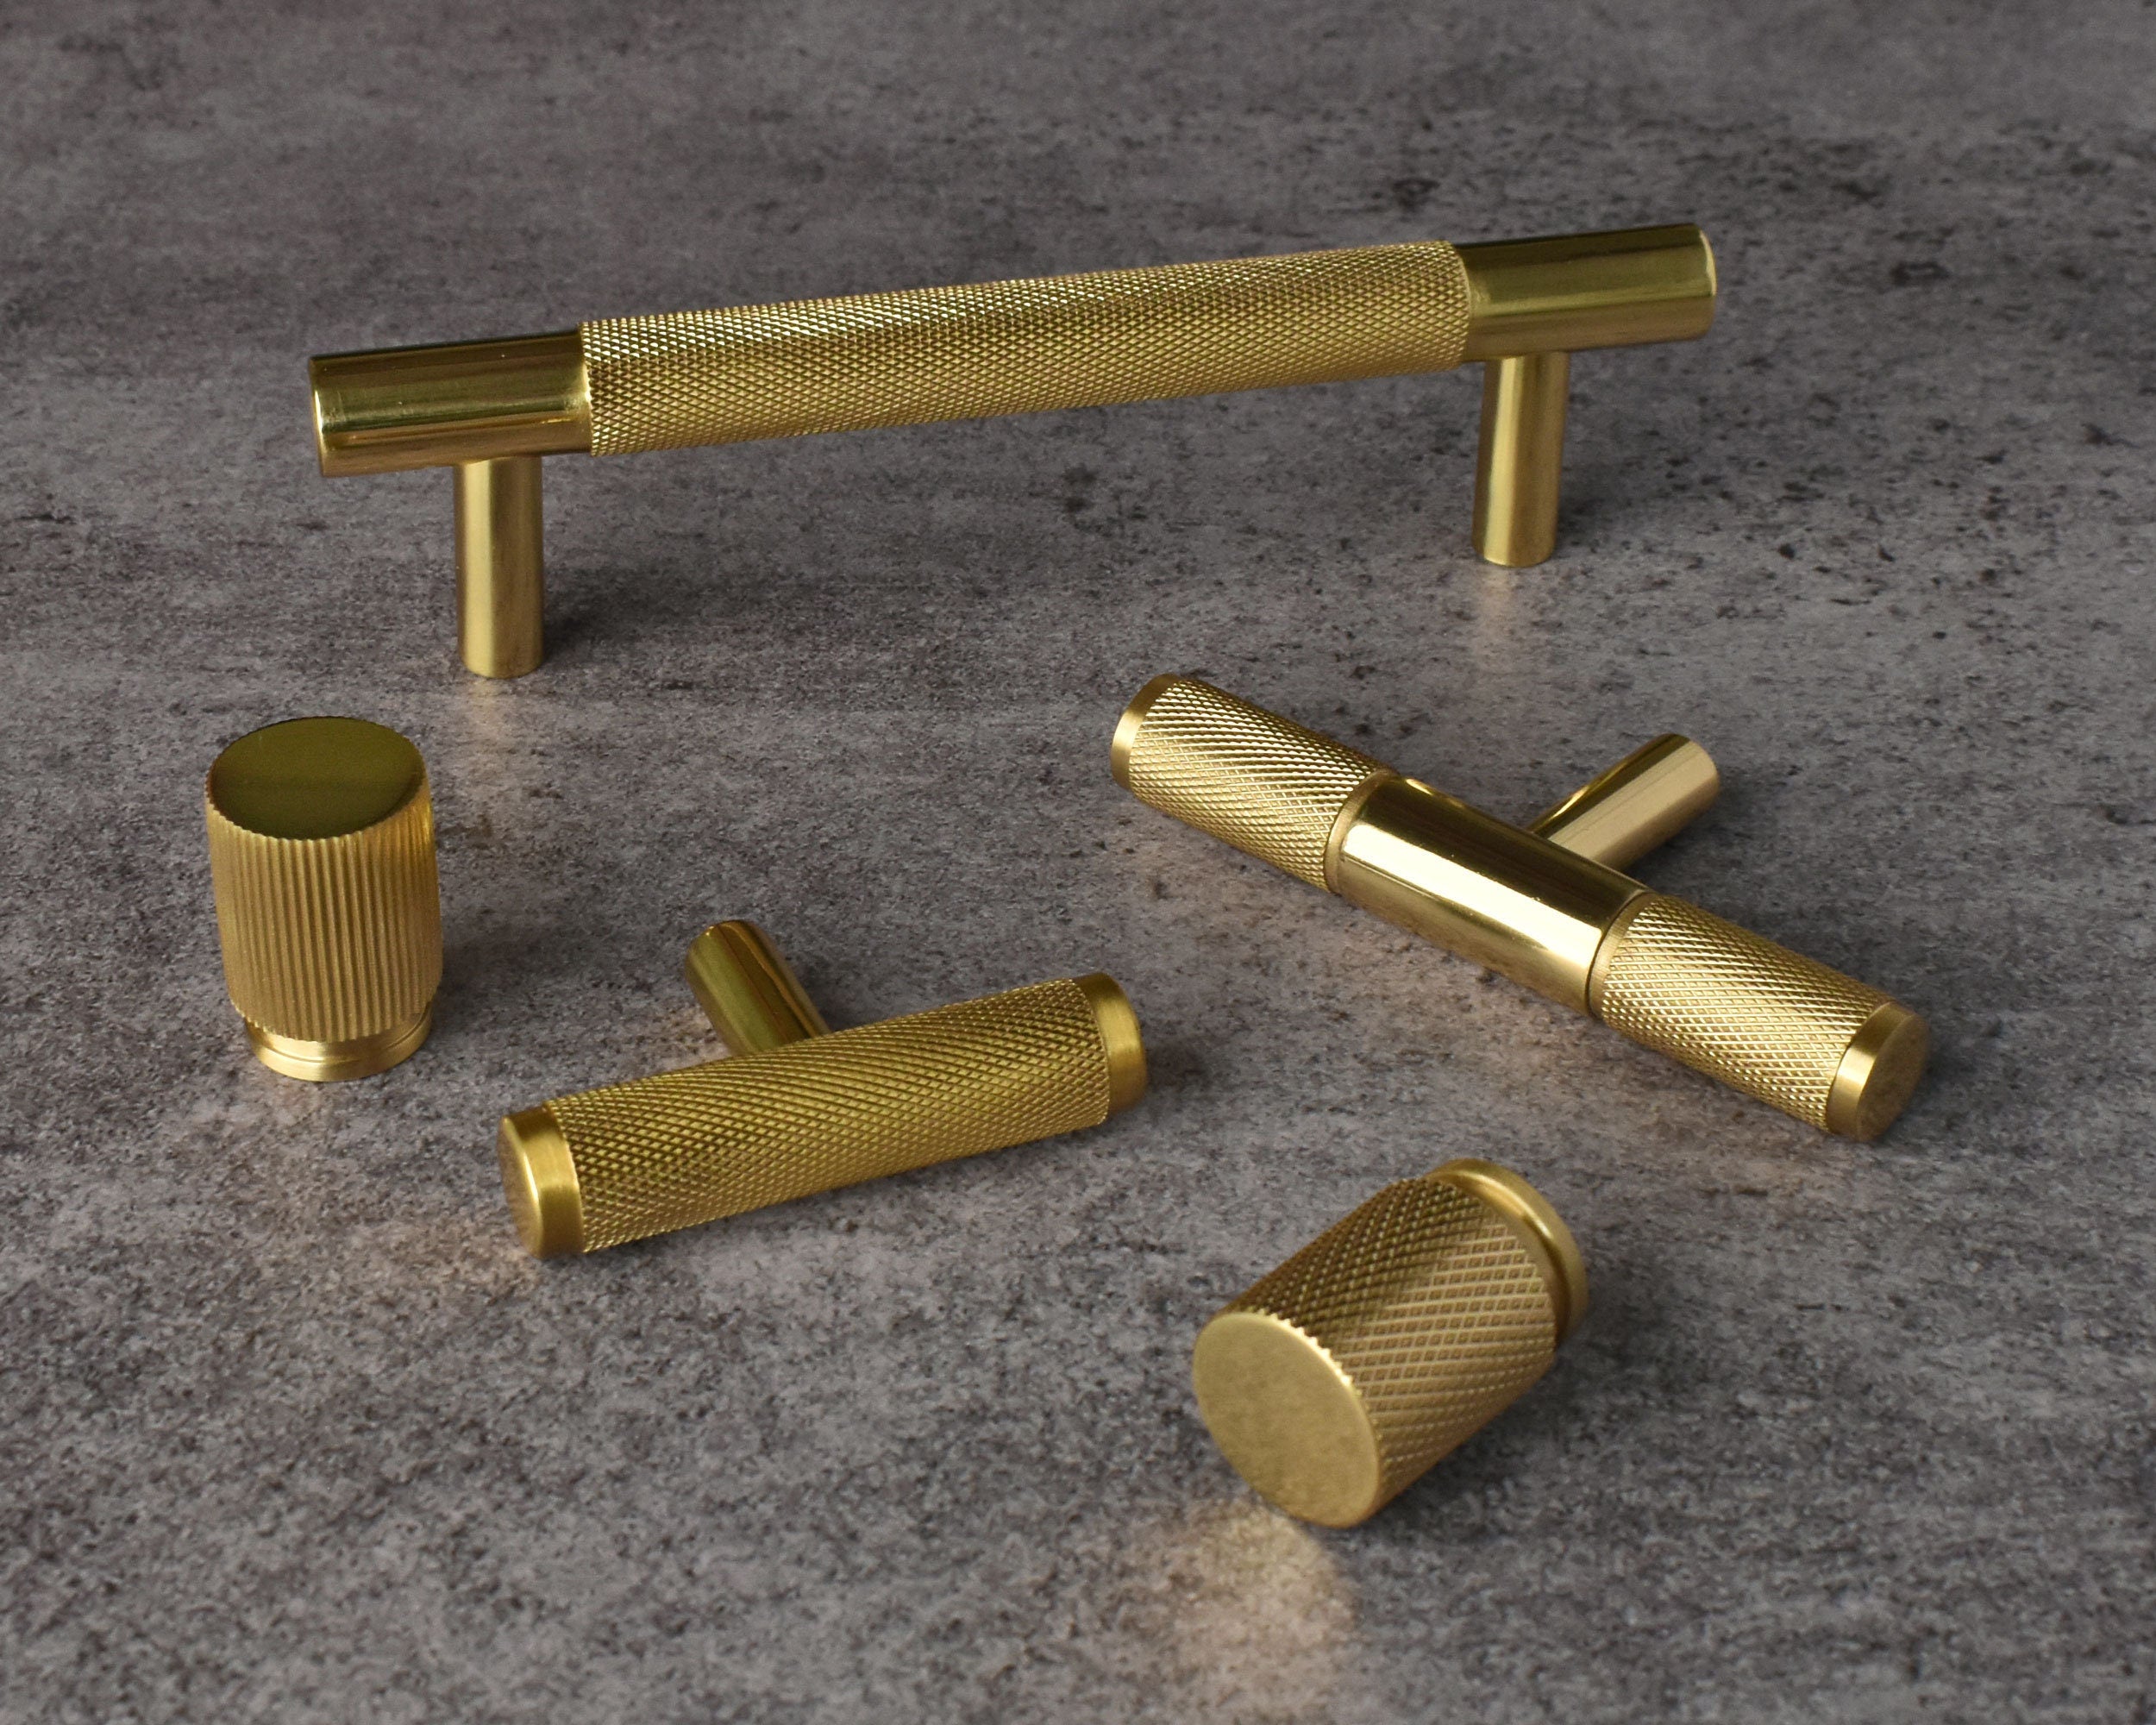 Knurled Solid Brass Kitchen Handles and Knobs Brass Door Handles Knurled  Door Wardrobe Cabinet Handles Gold Knurling Handles